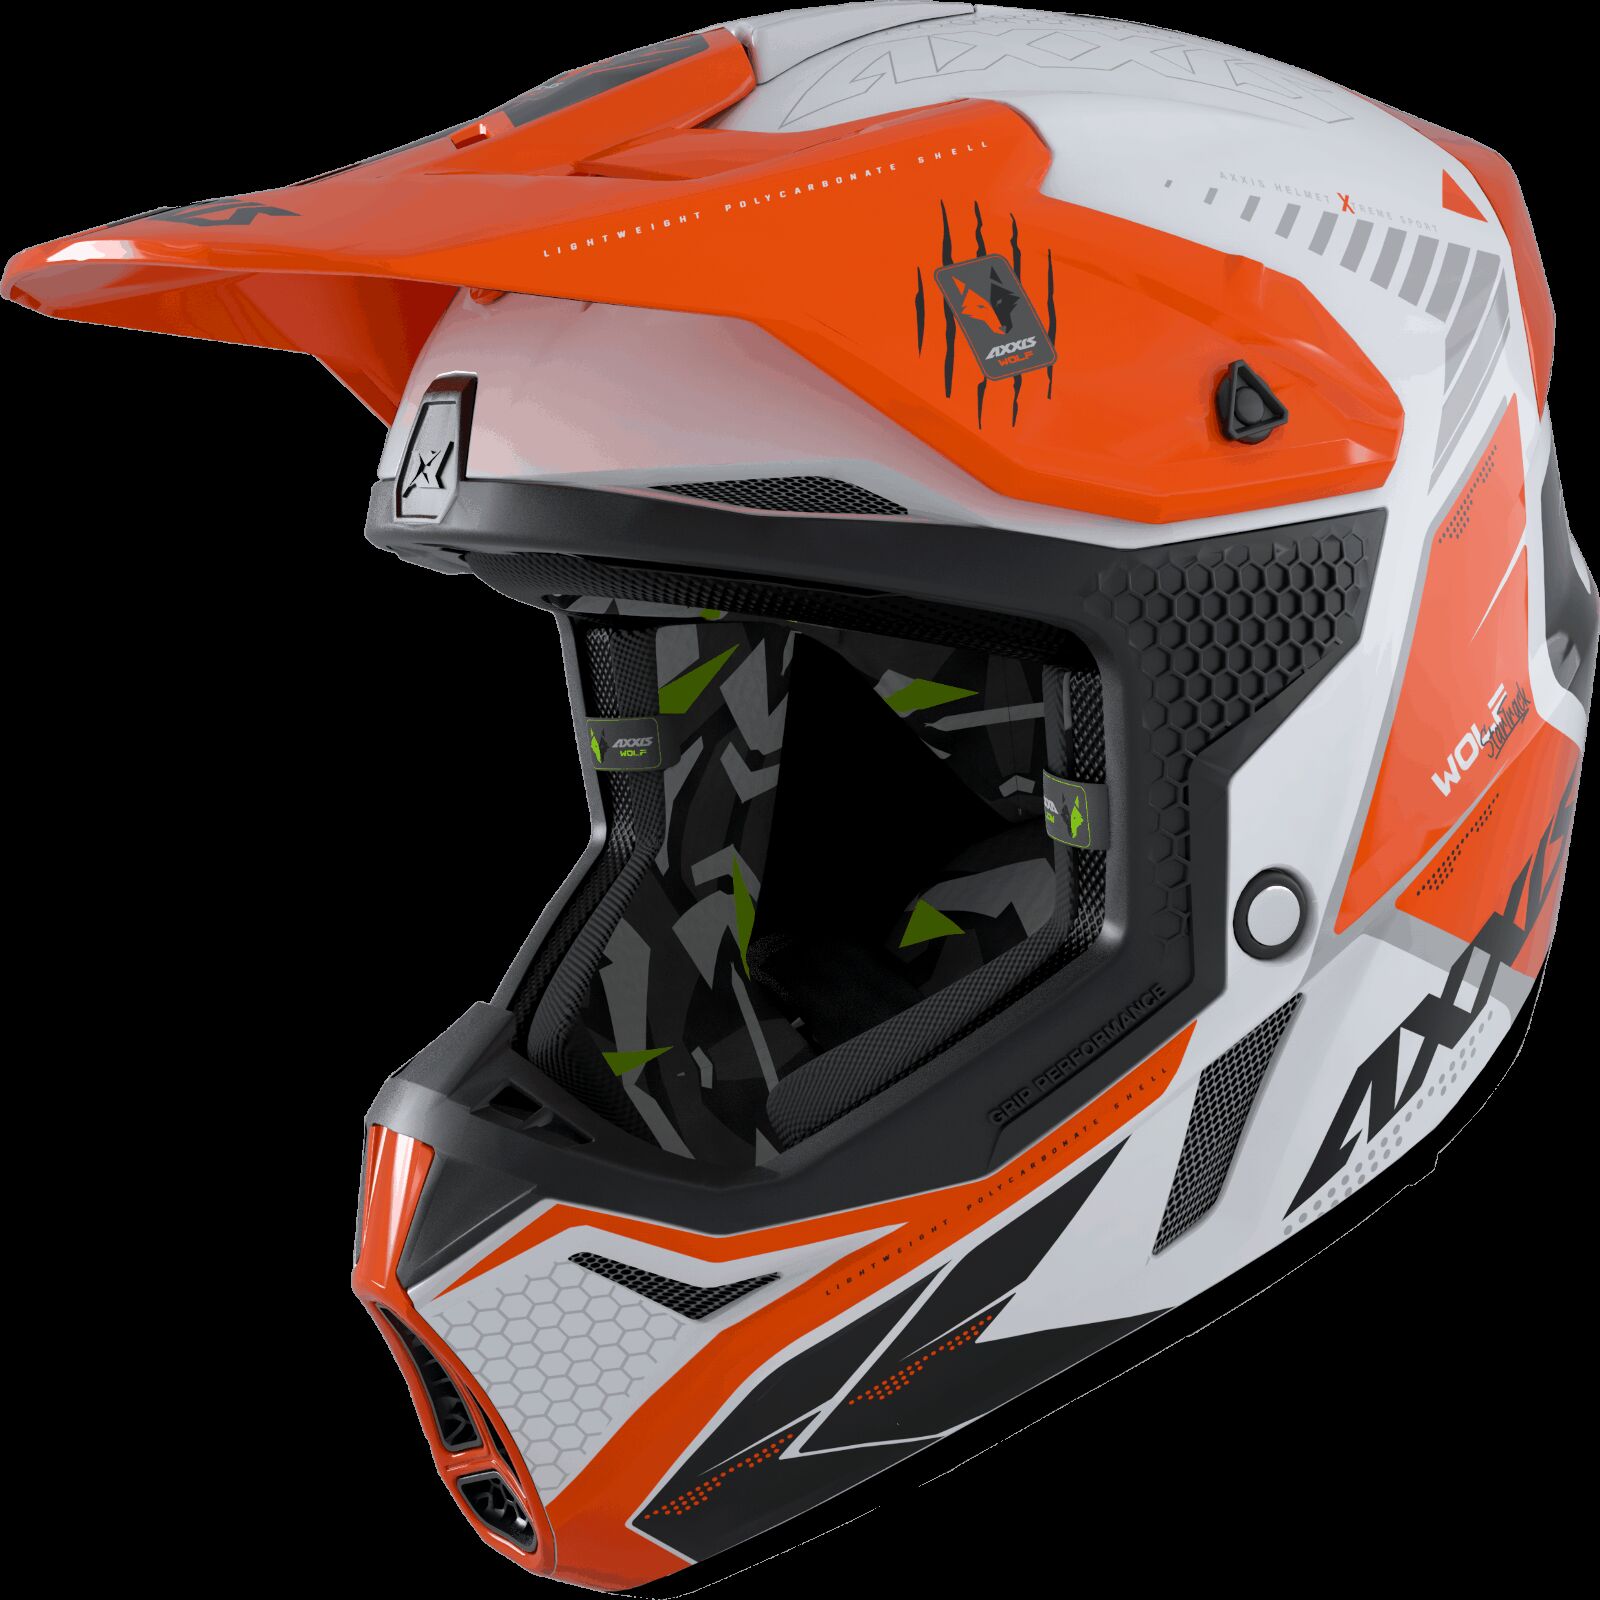 Obrázek produktu Motokrosová helma AXXIS WOLF ABS star track a4 lesklá fluor oranžová XS 42587410403